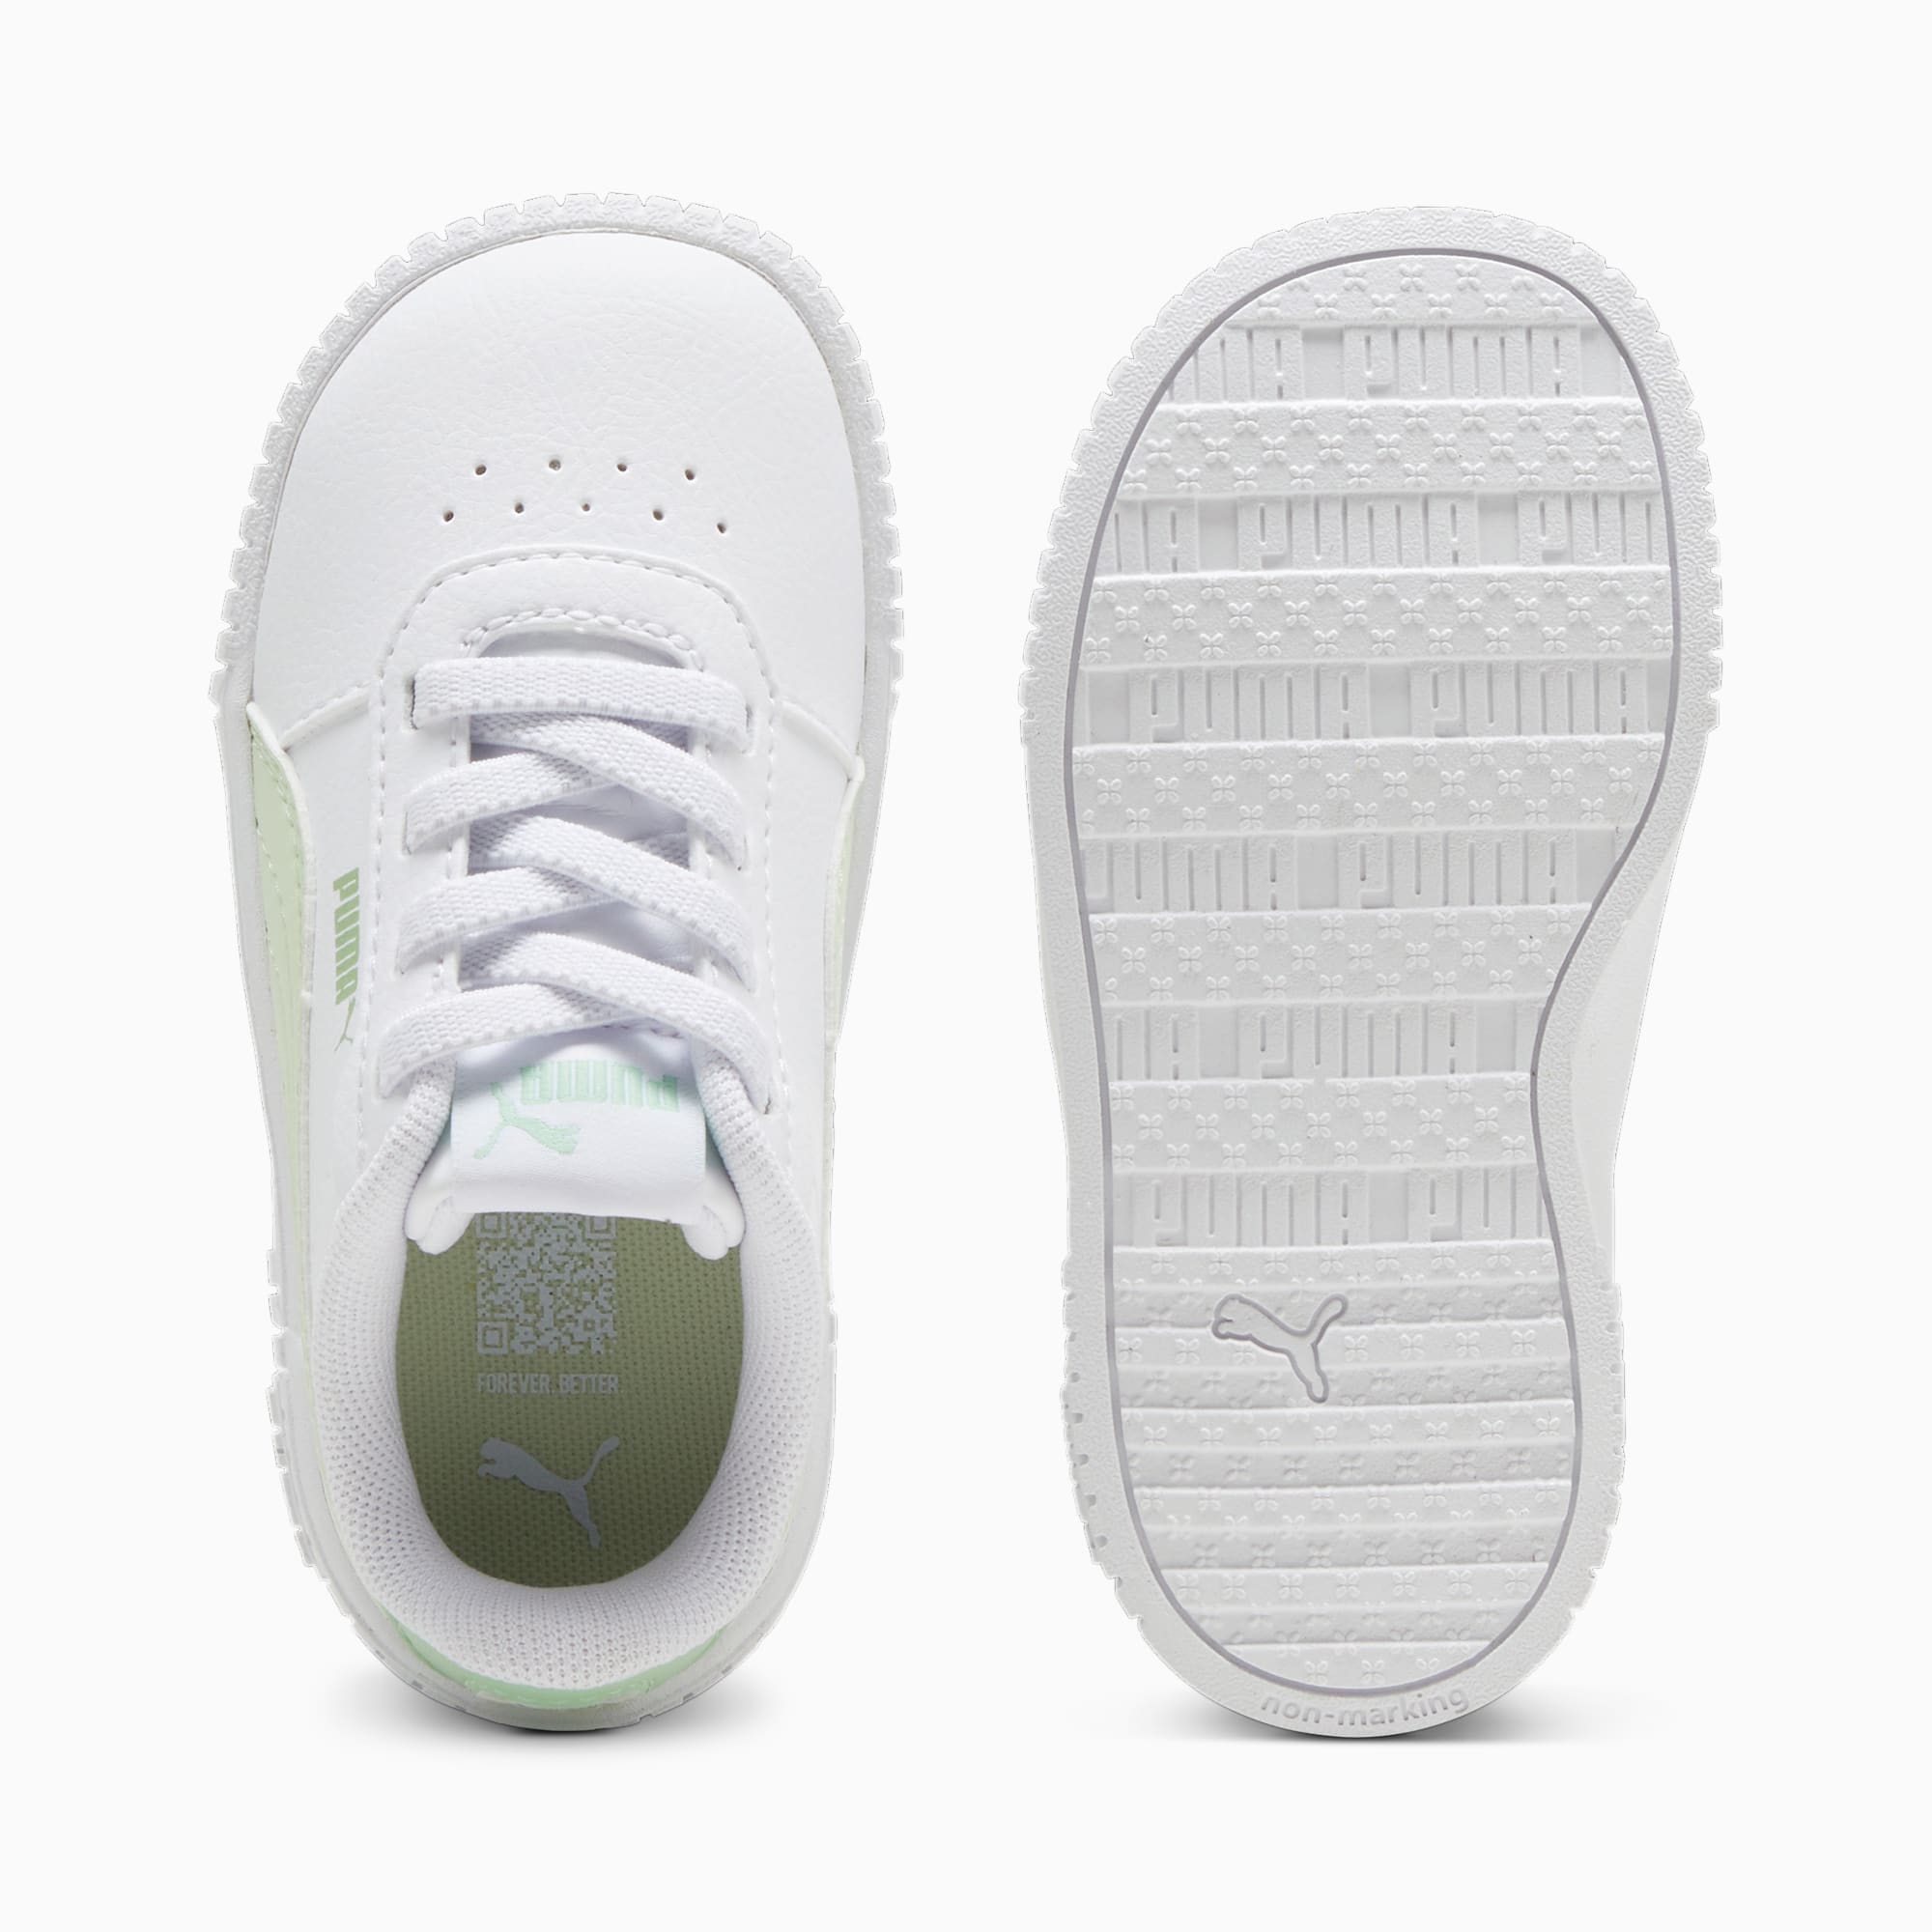 PUMA Niemowlęce Sneakersy Carina 2,0 AC, Biały / Zielony